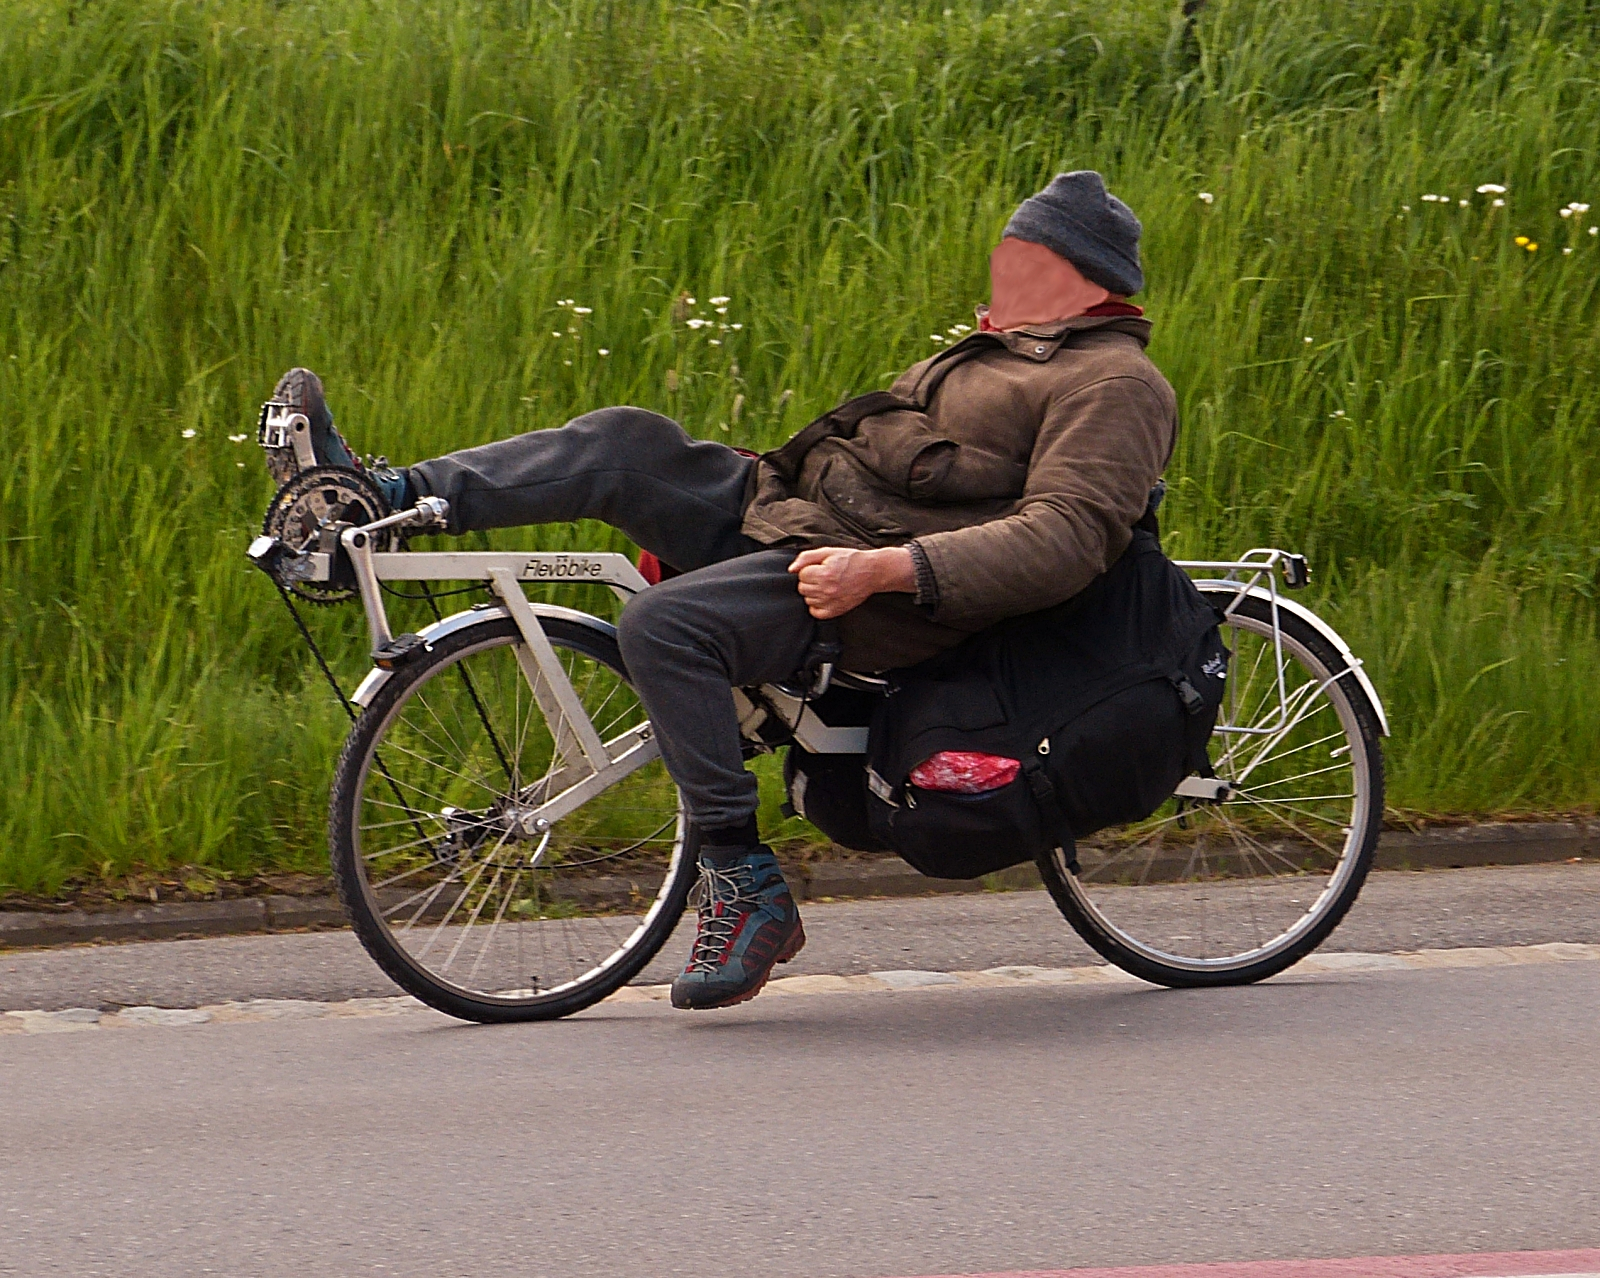 In gemächlichem Tempo fährt dieser Fahrradfahrer auf seinem Liegefahrrad mir vor die Linse. 05.2023